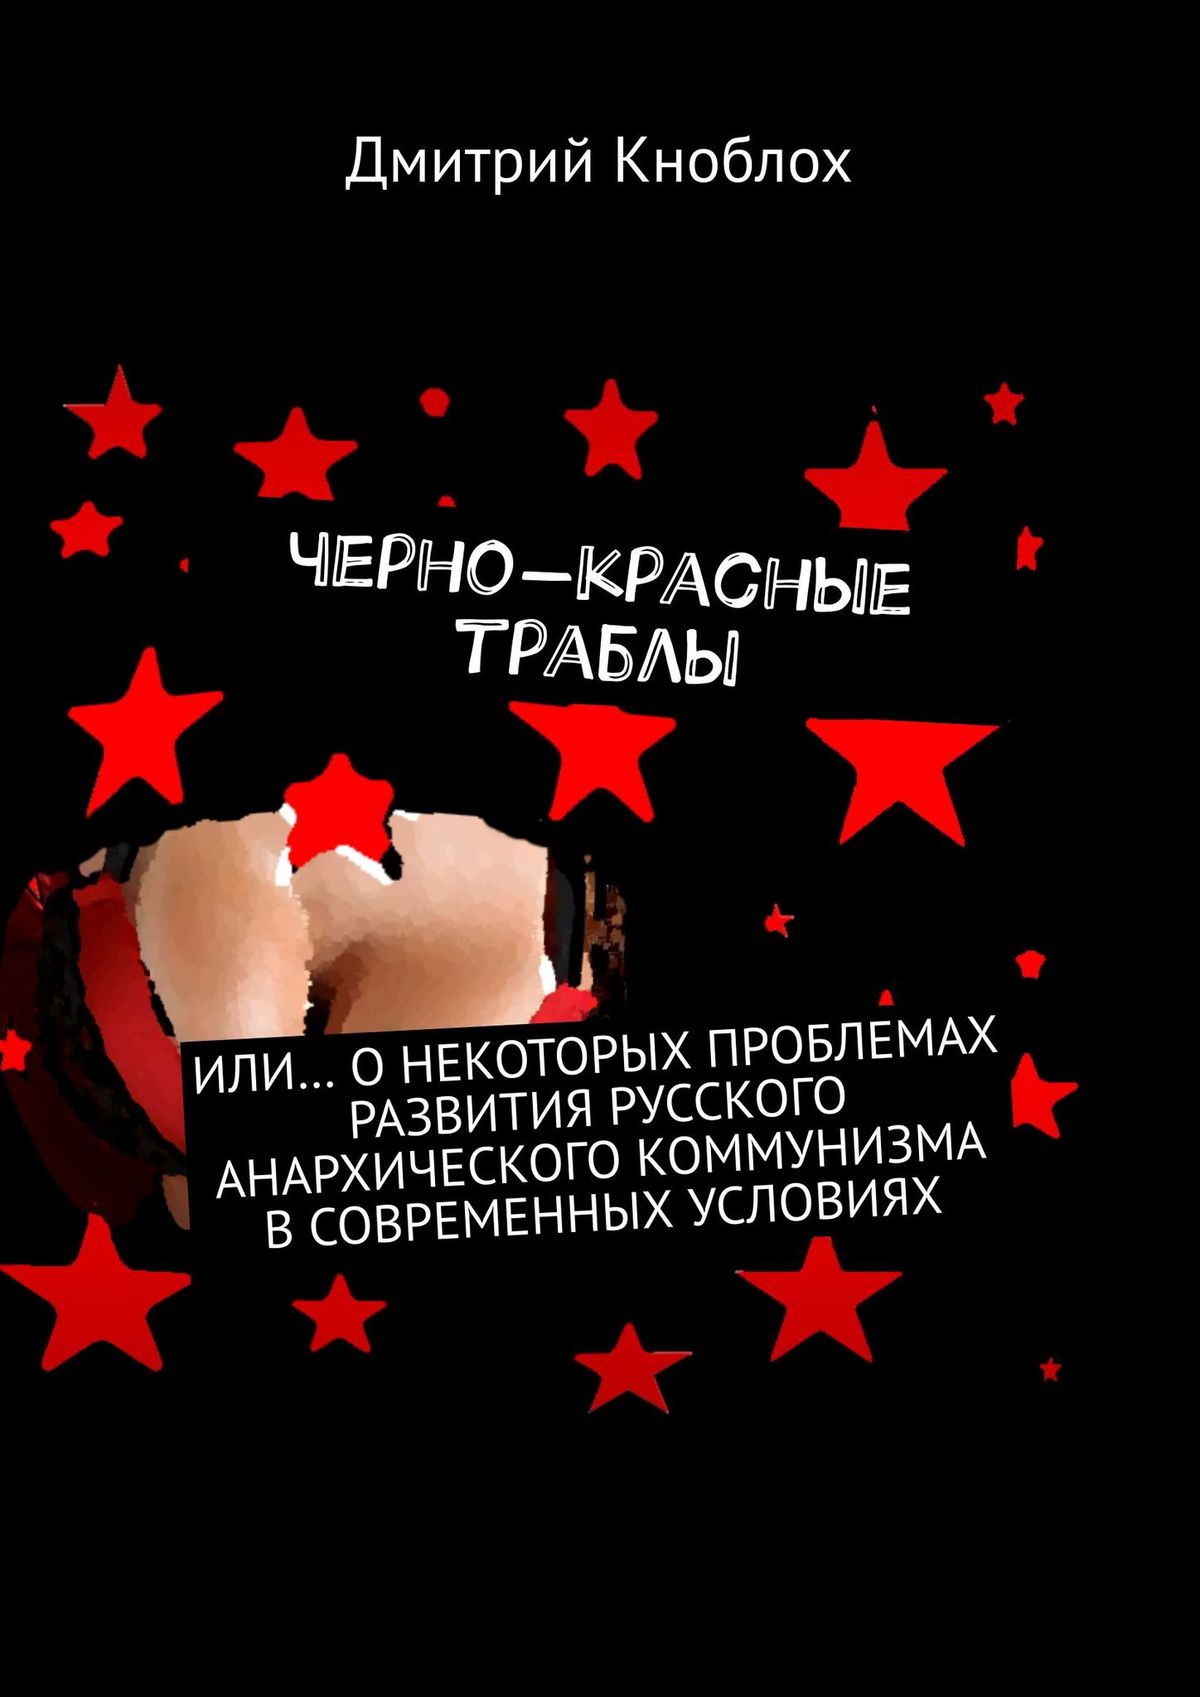 Большие красно-черные сиськи. Или… о некоторых проблемах развития русского анархического коммунизма в современных условиях